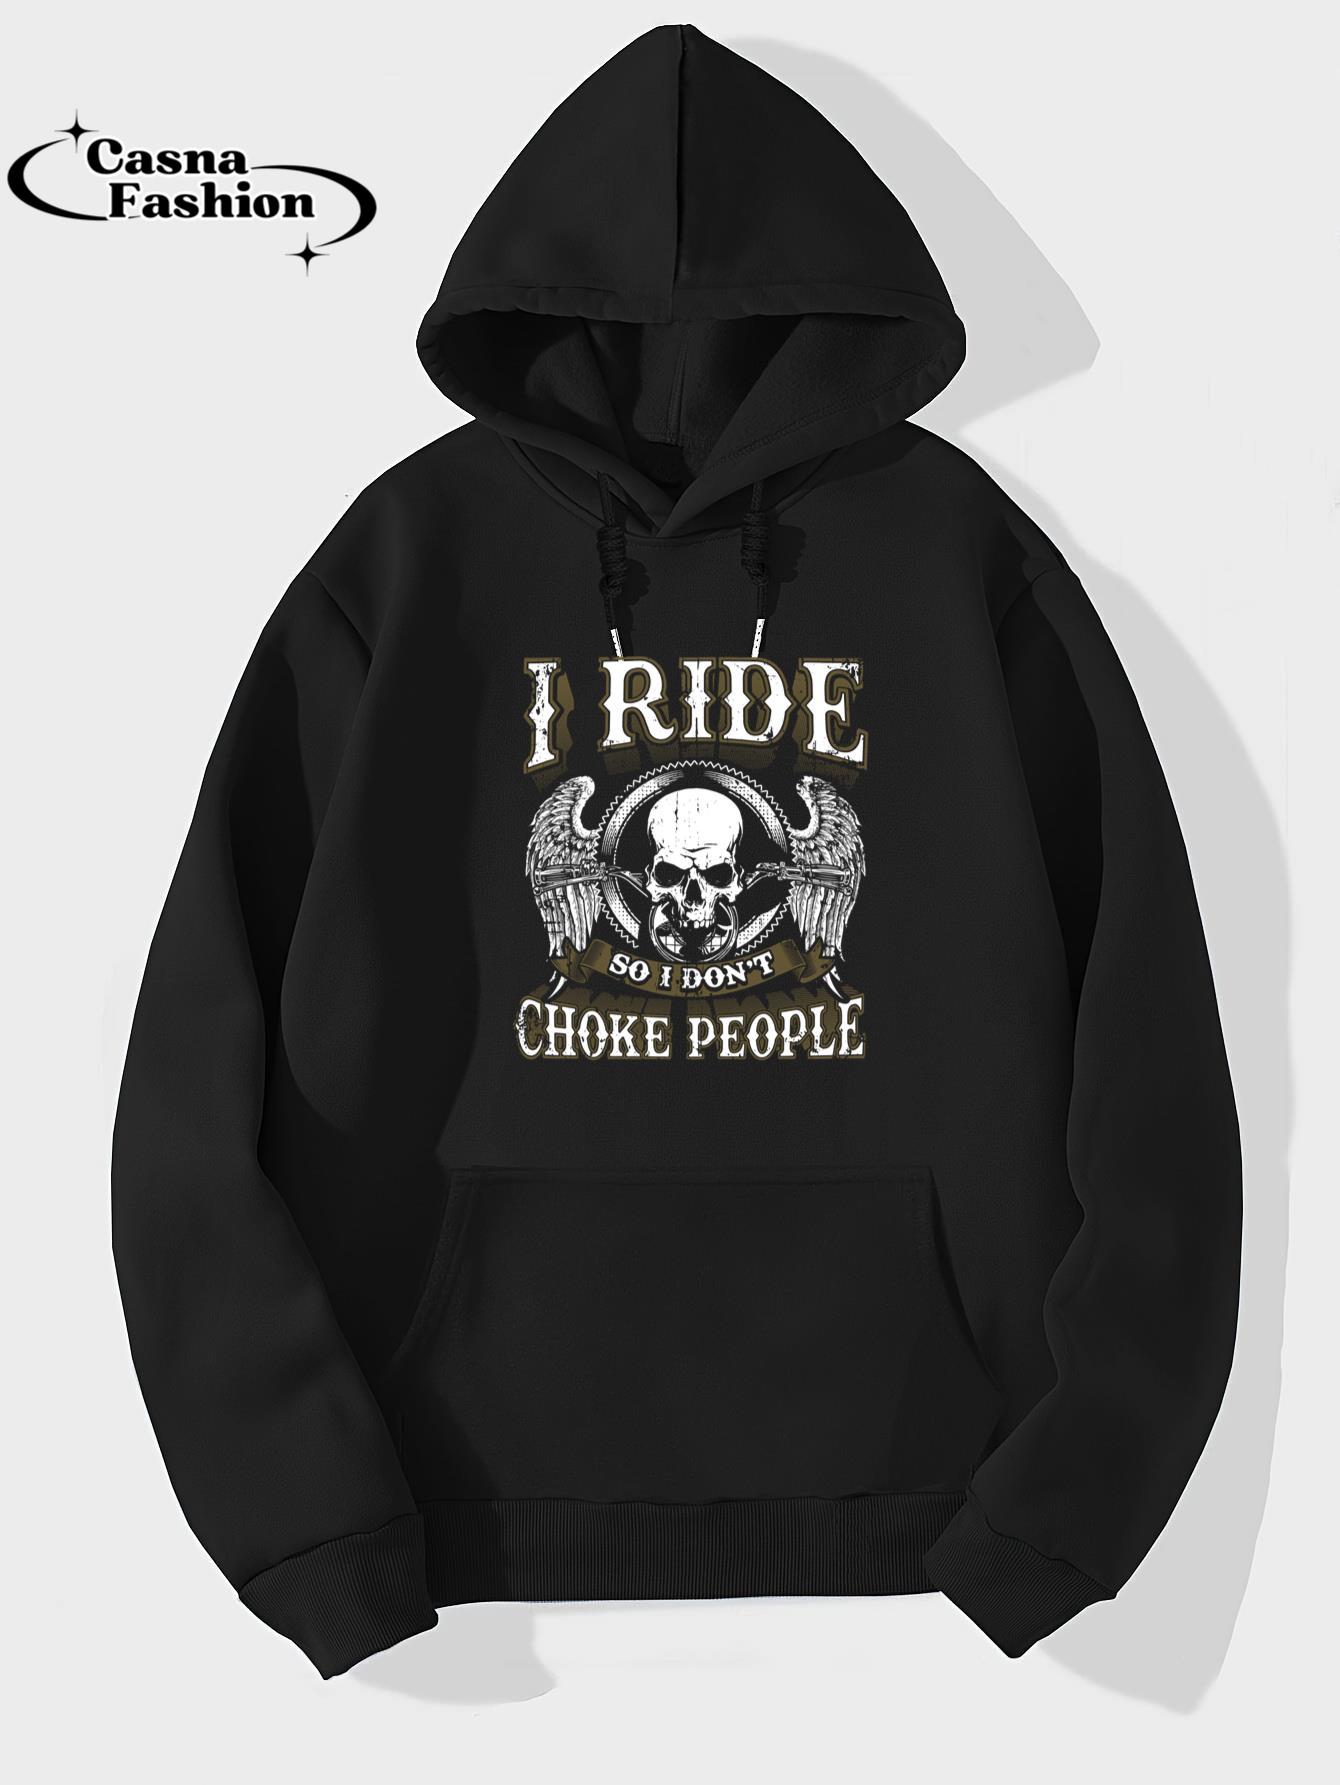 casnafashion_Hoodie_Ride Choke People Motorcycle Shirt Biker Gift Long Sleeve_hoodie_black hoodie